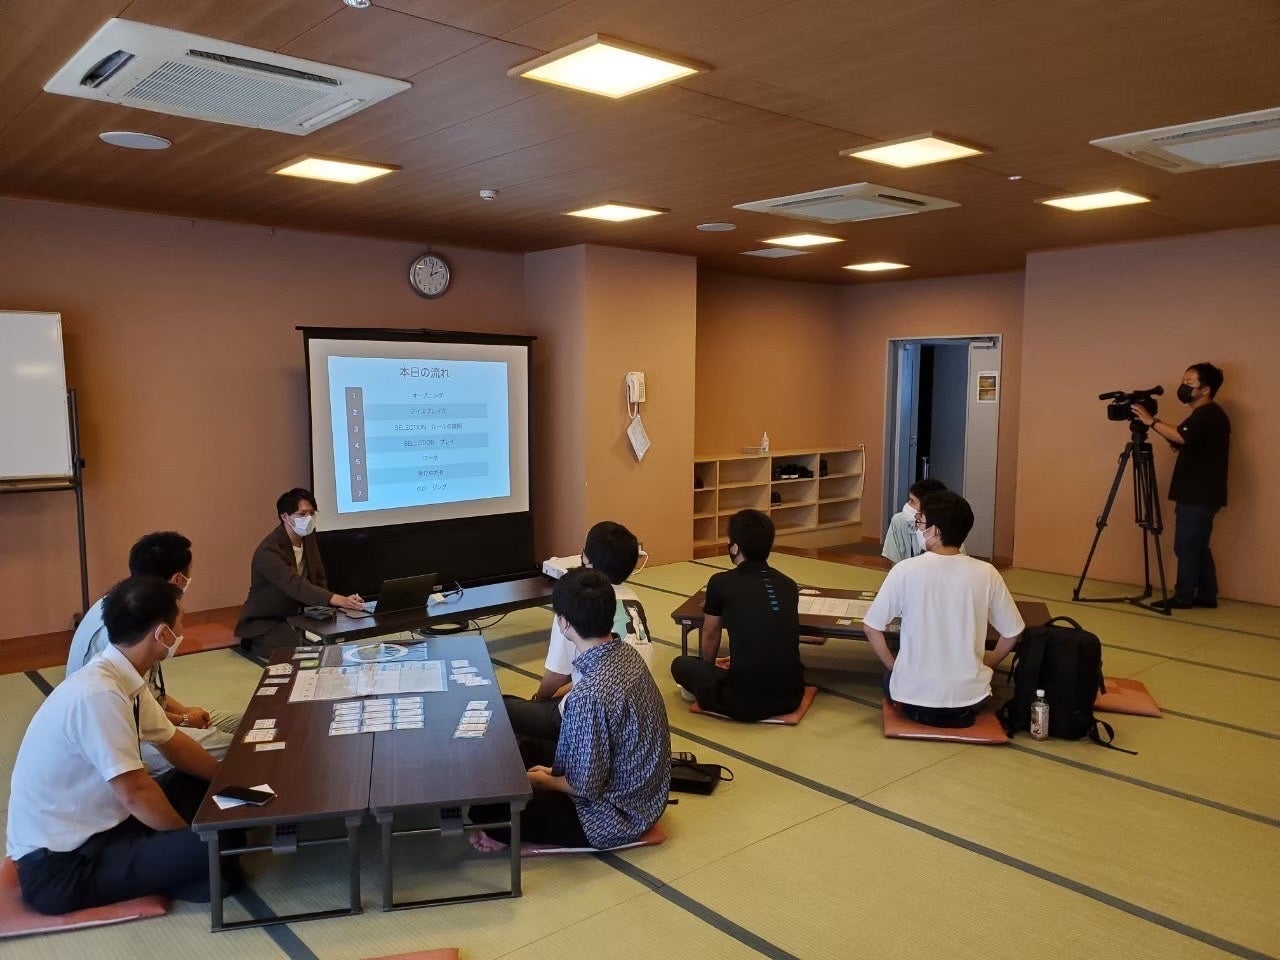 株式会社LODU（ロデュ）から日本初の「学校におけるルールメイキング」をテーマとしたボードゲーム教材を無料配信開始のサブ画像1